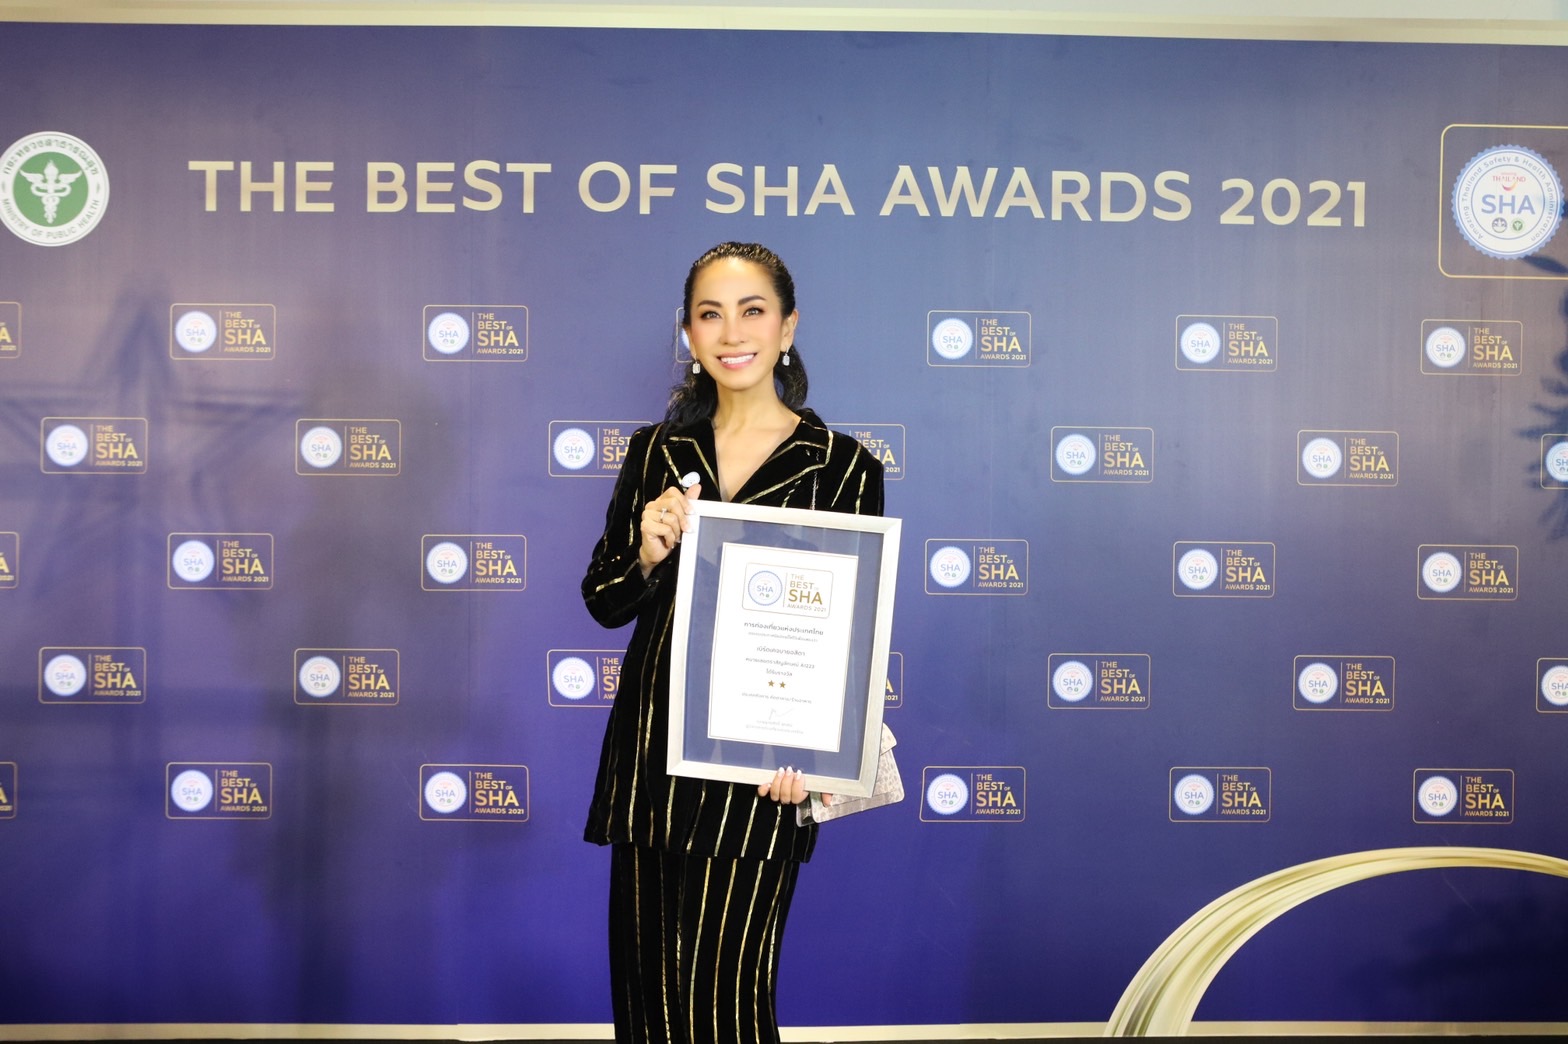 “จี๊ด – อสิตา” หน้าบาน อสิตาอีโครีสอร์ต รับรางวัล The Best of Sha 2021 สาขา ร้านอาหารดีเยี่ยม จัดโดย ททท และกระทรวงสาธารณสุข